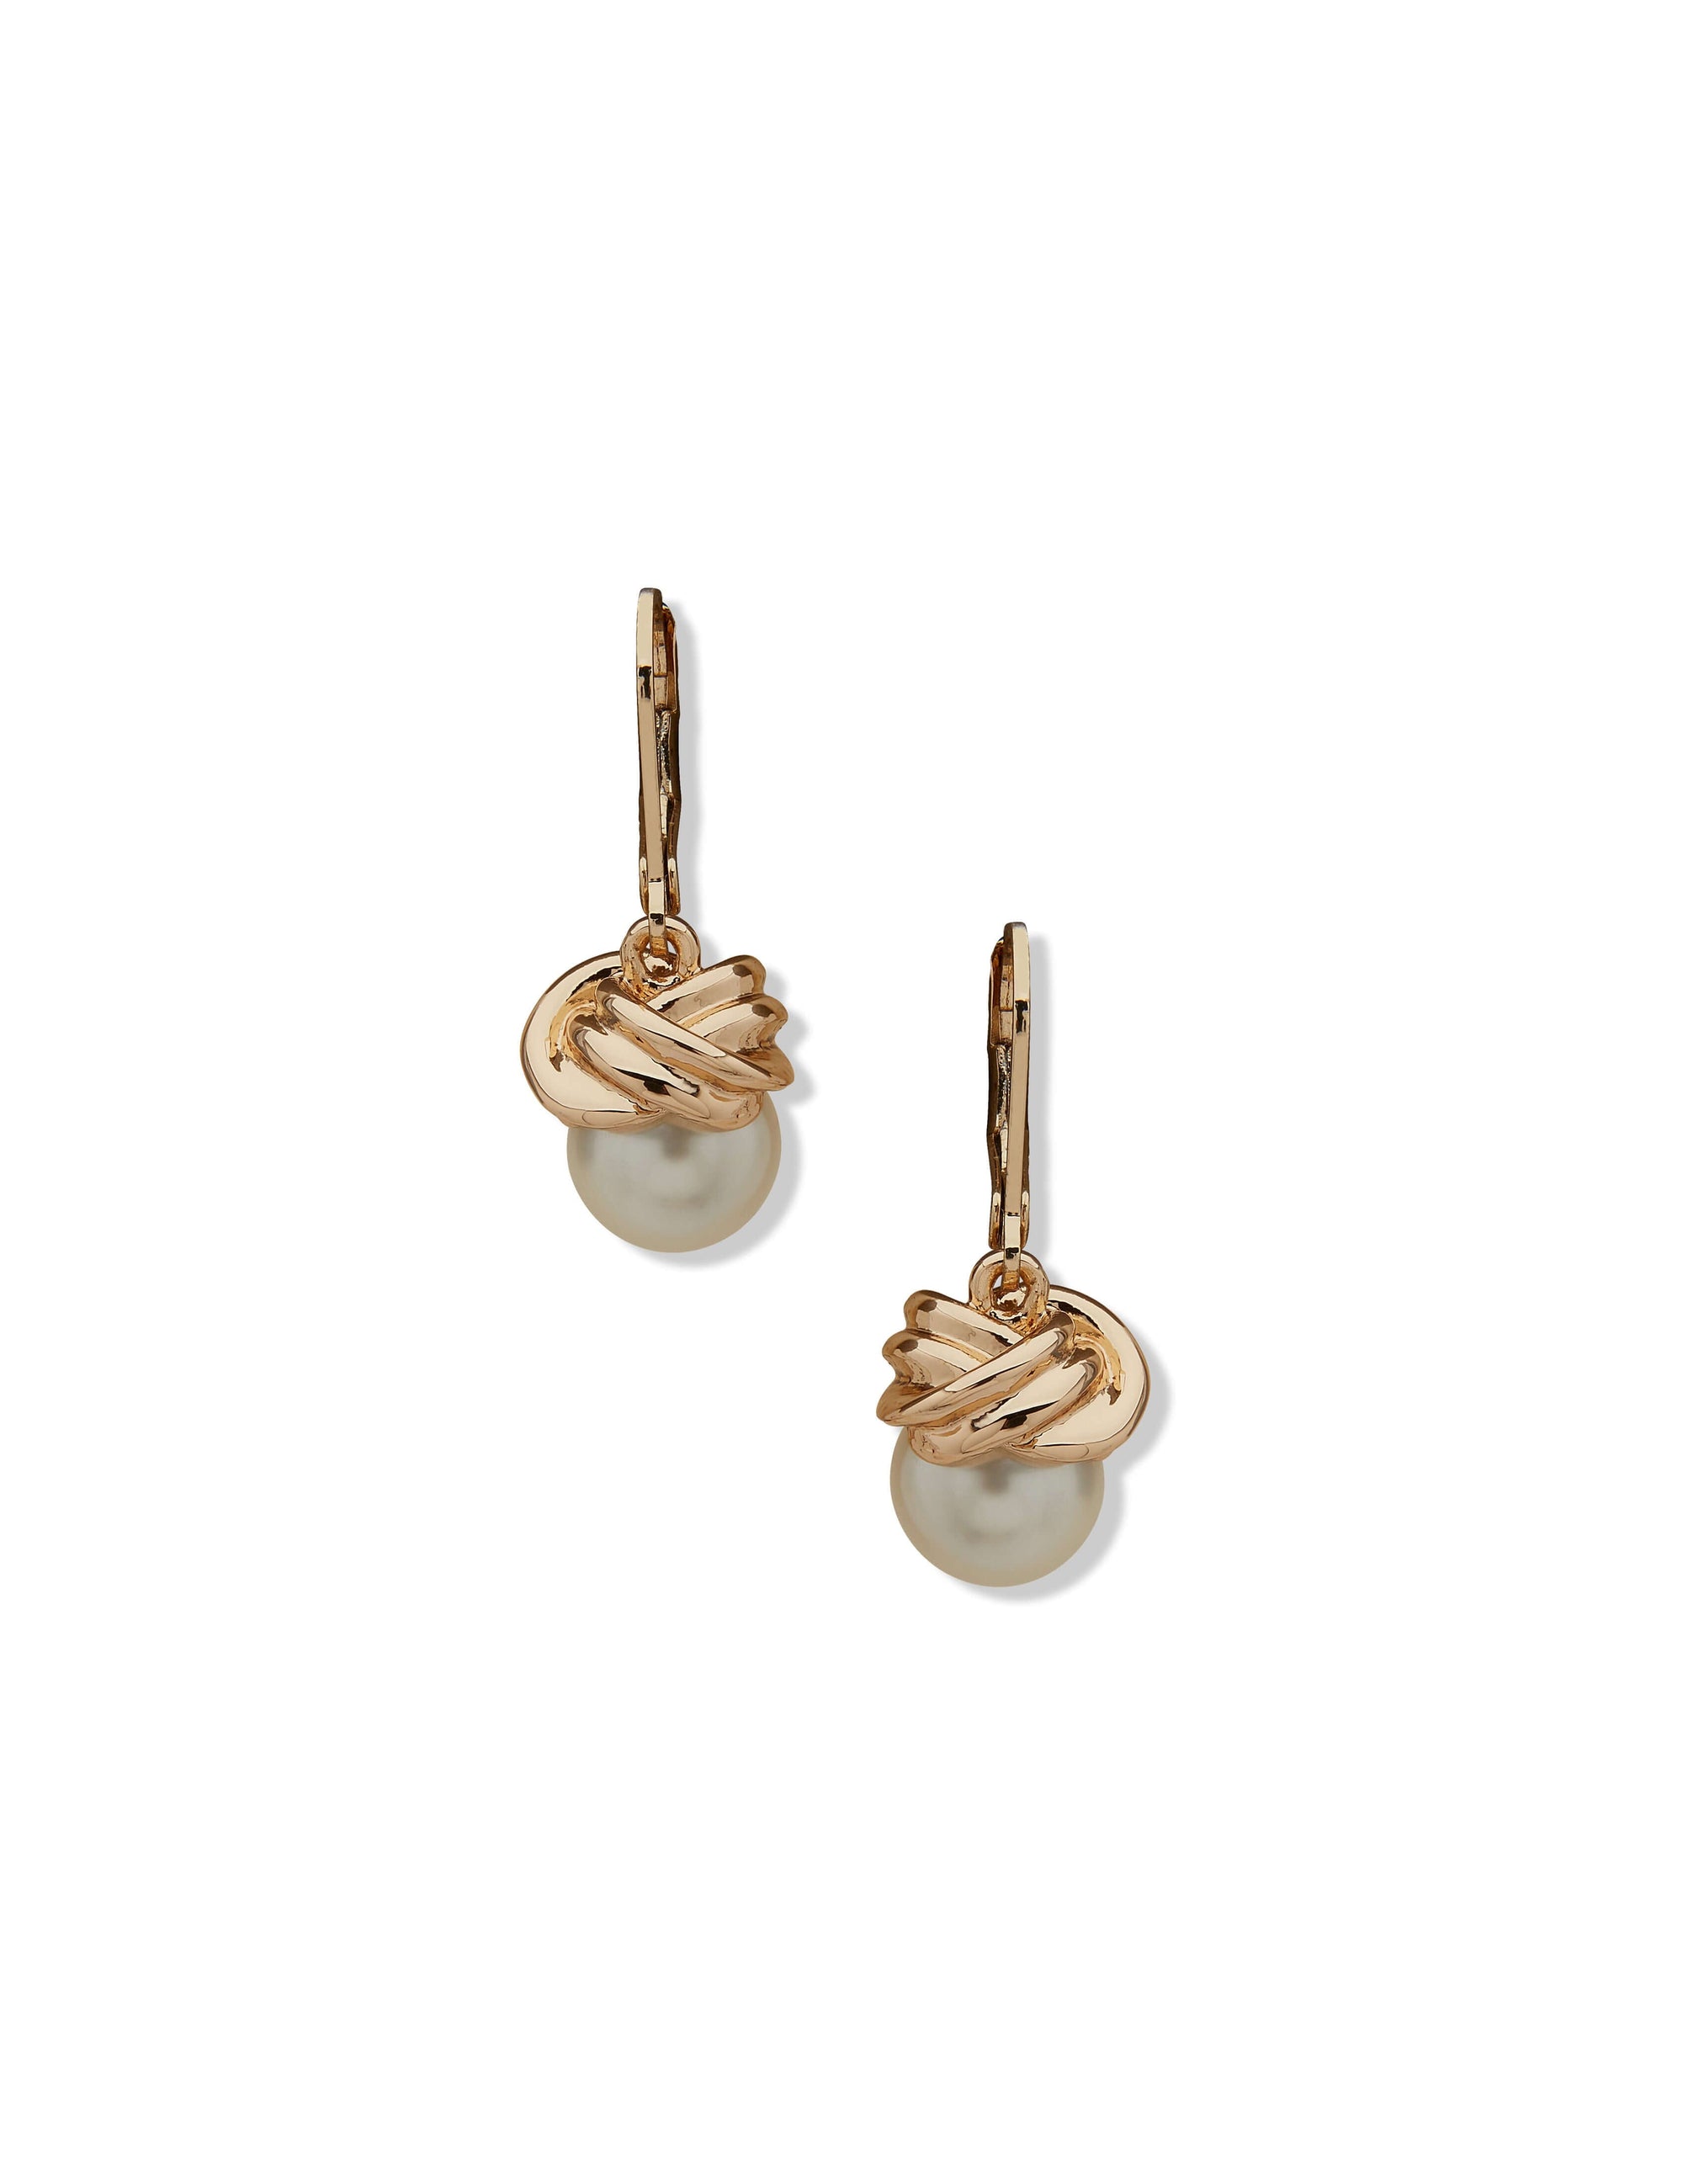 Jewelry - Earrings - Anne Klein